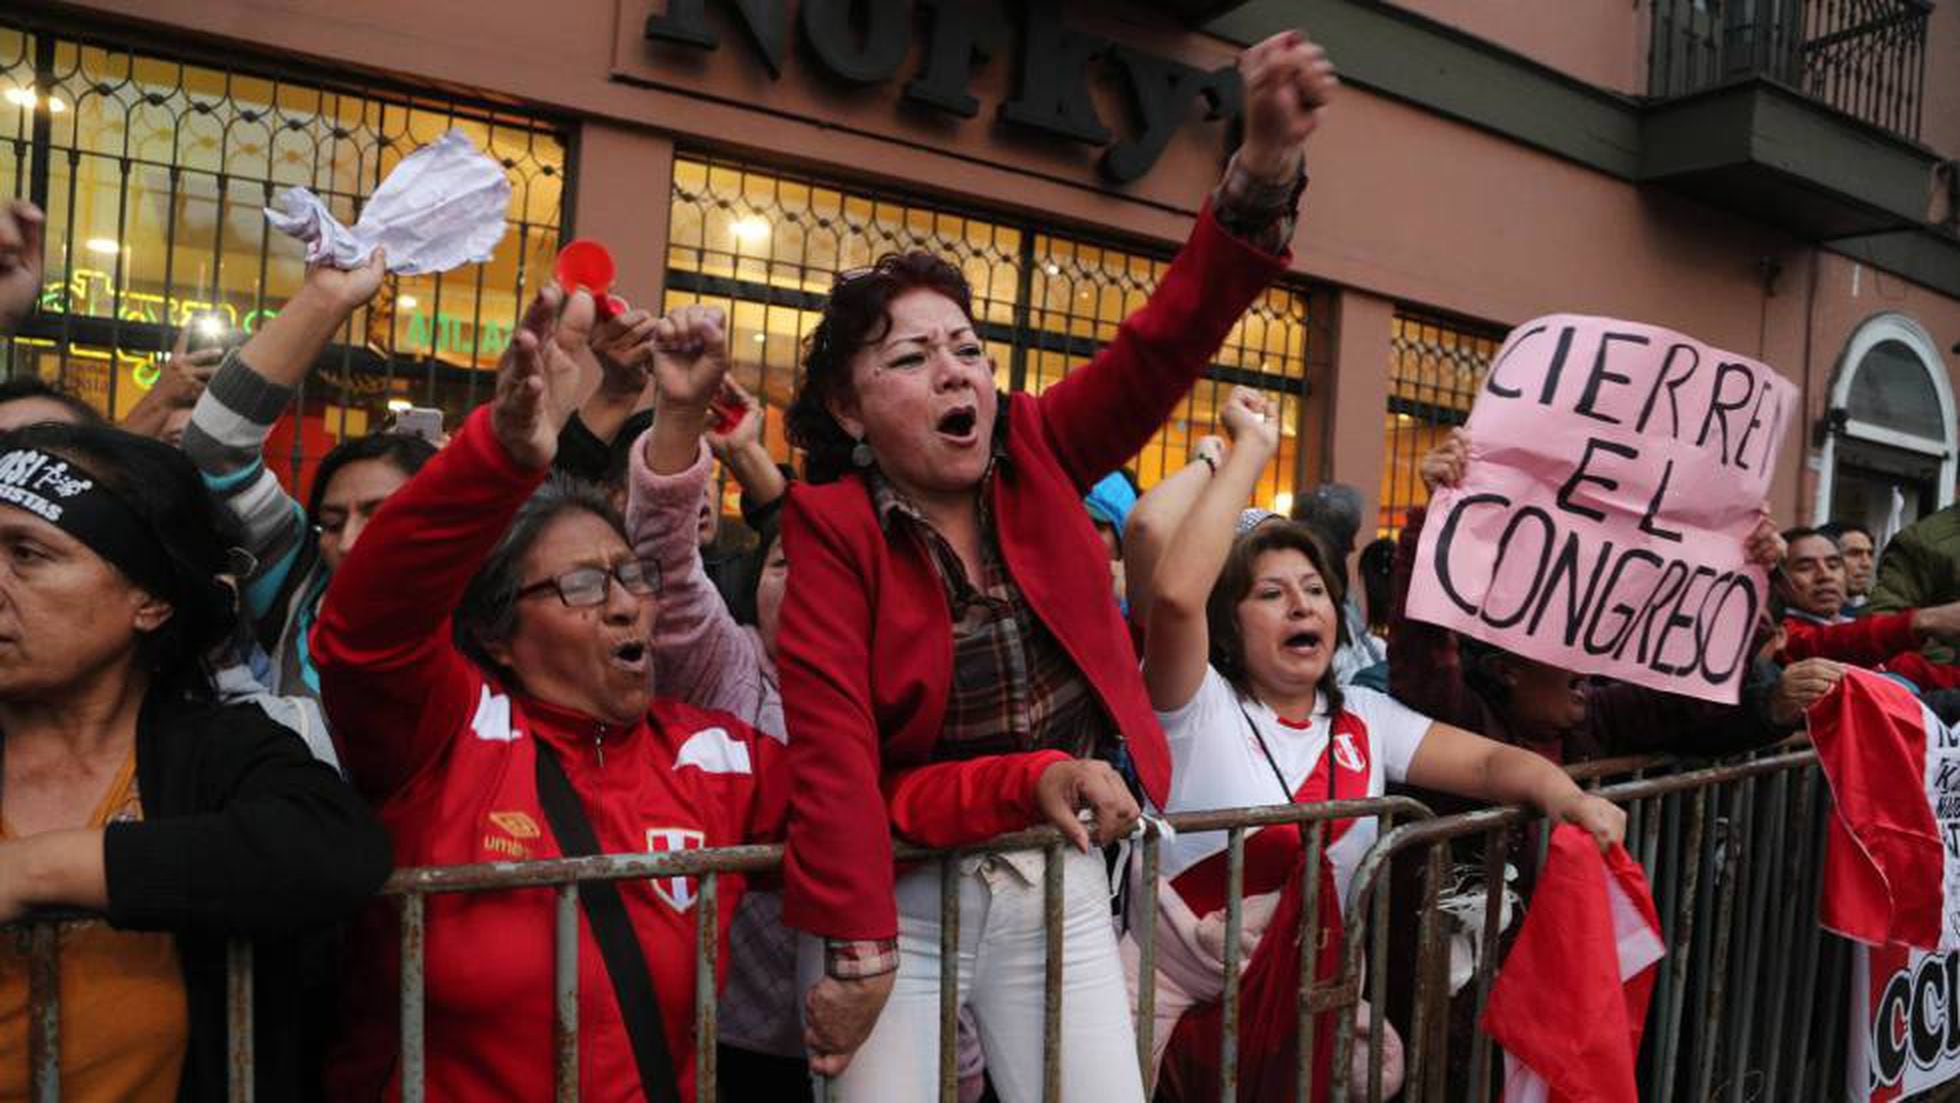 Vizcarra: O presidente do Peru dissolve o Parlamento em meio a um confronto com a oposição Fujimori |  América |  O PAÍS